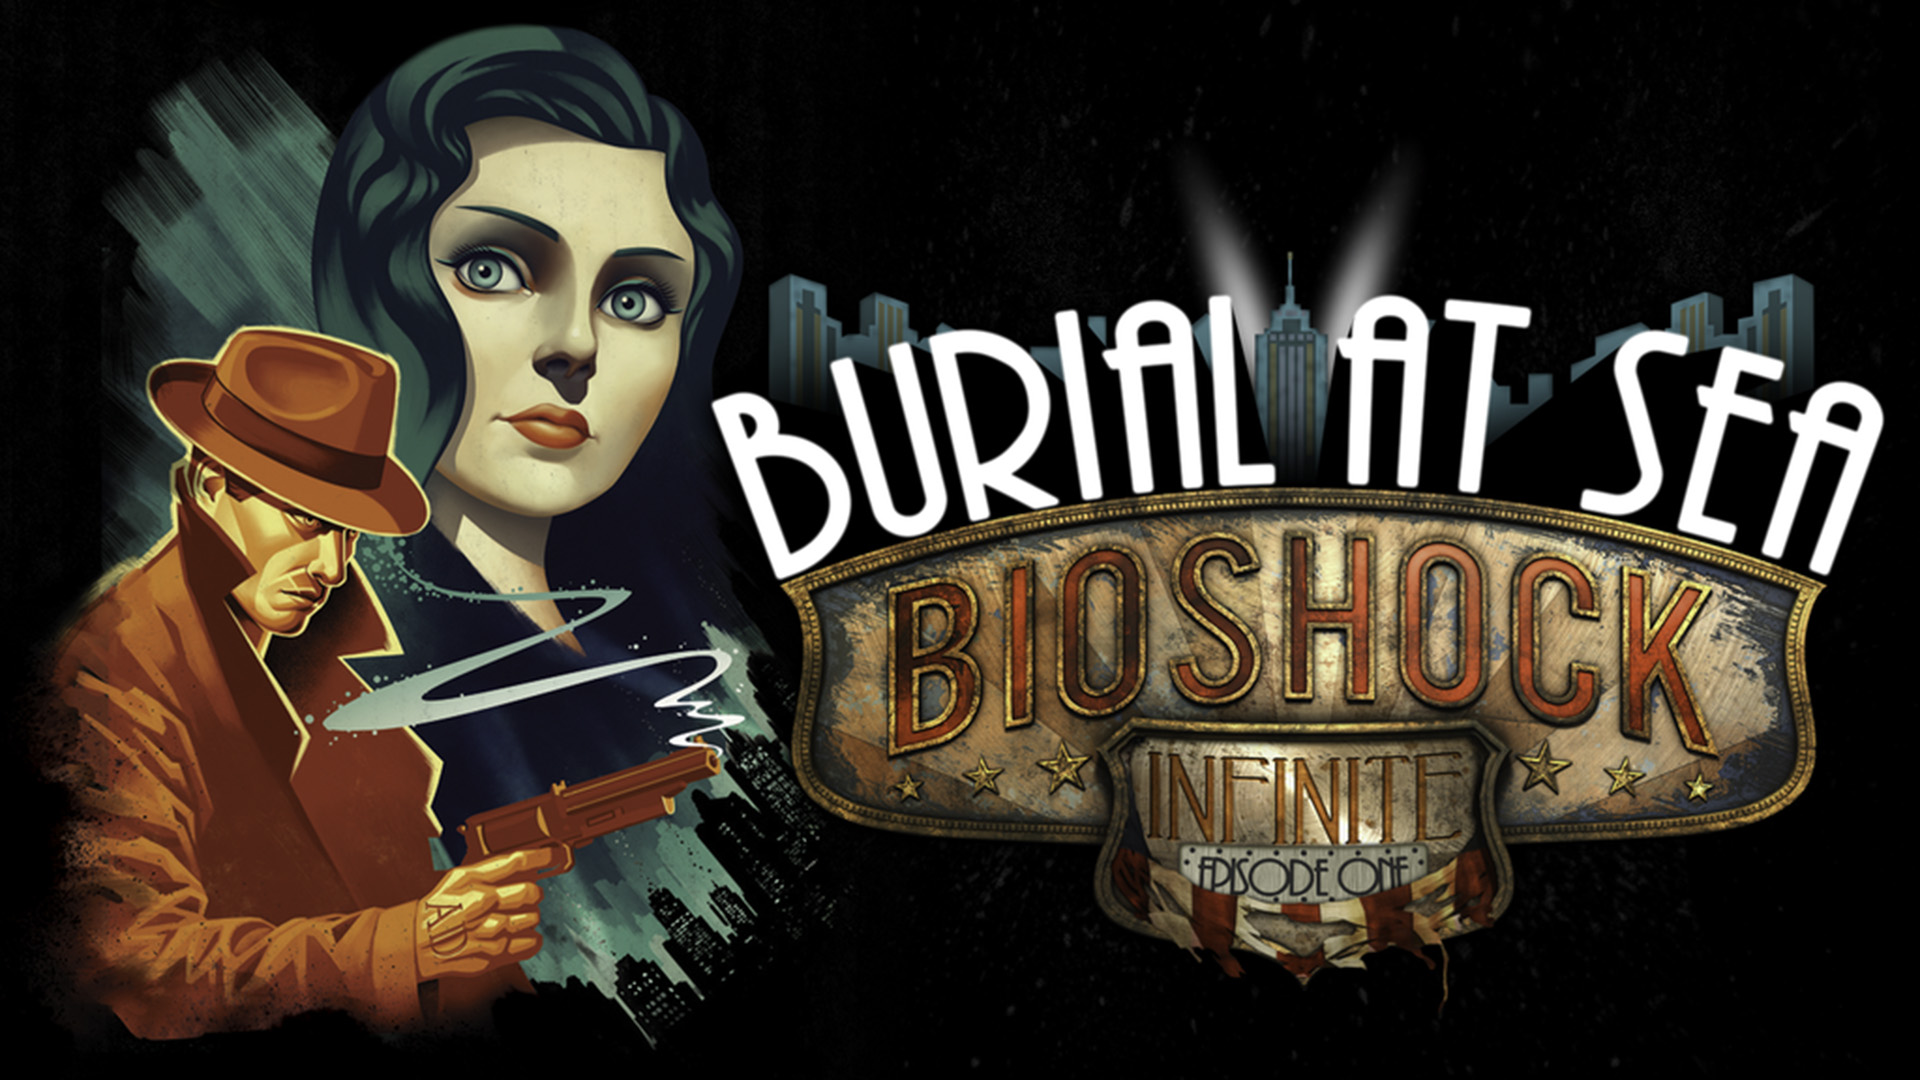 BioShock Infinite Burial at Sea HD Wallpaper 1920x1080. 